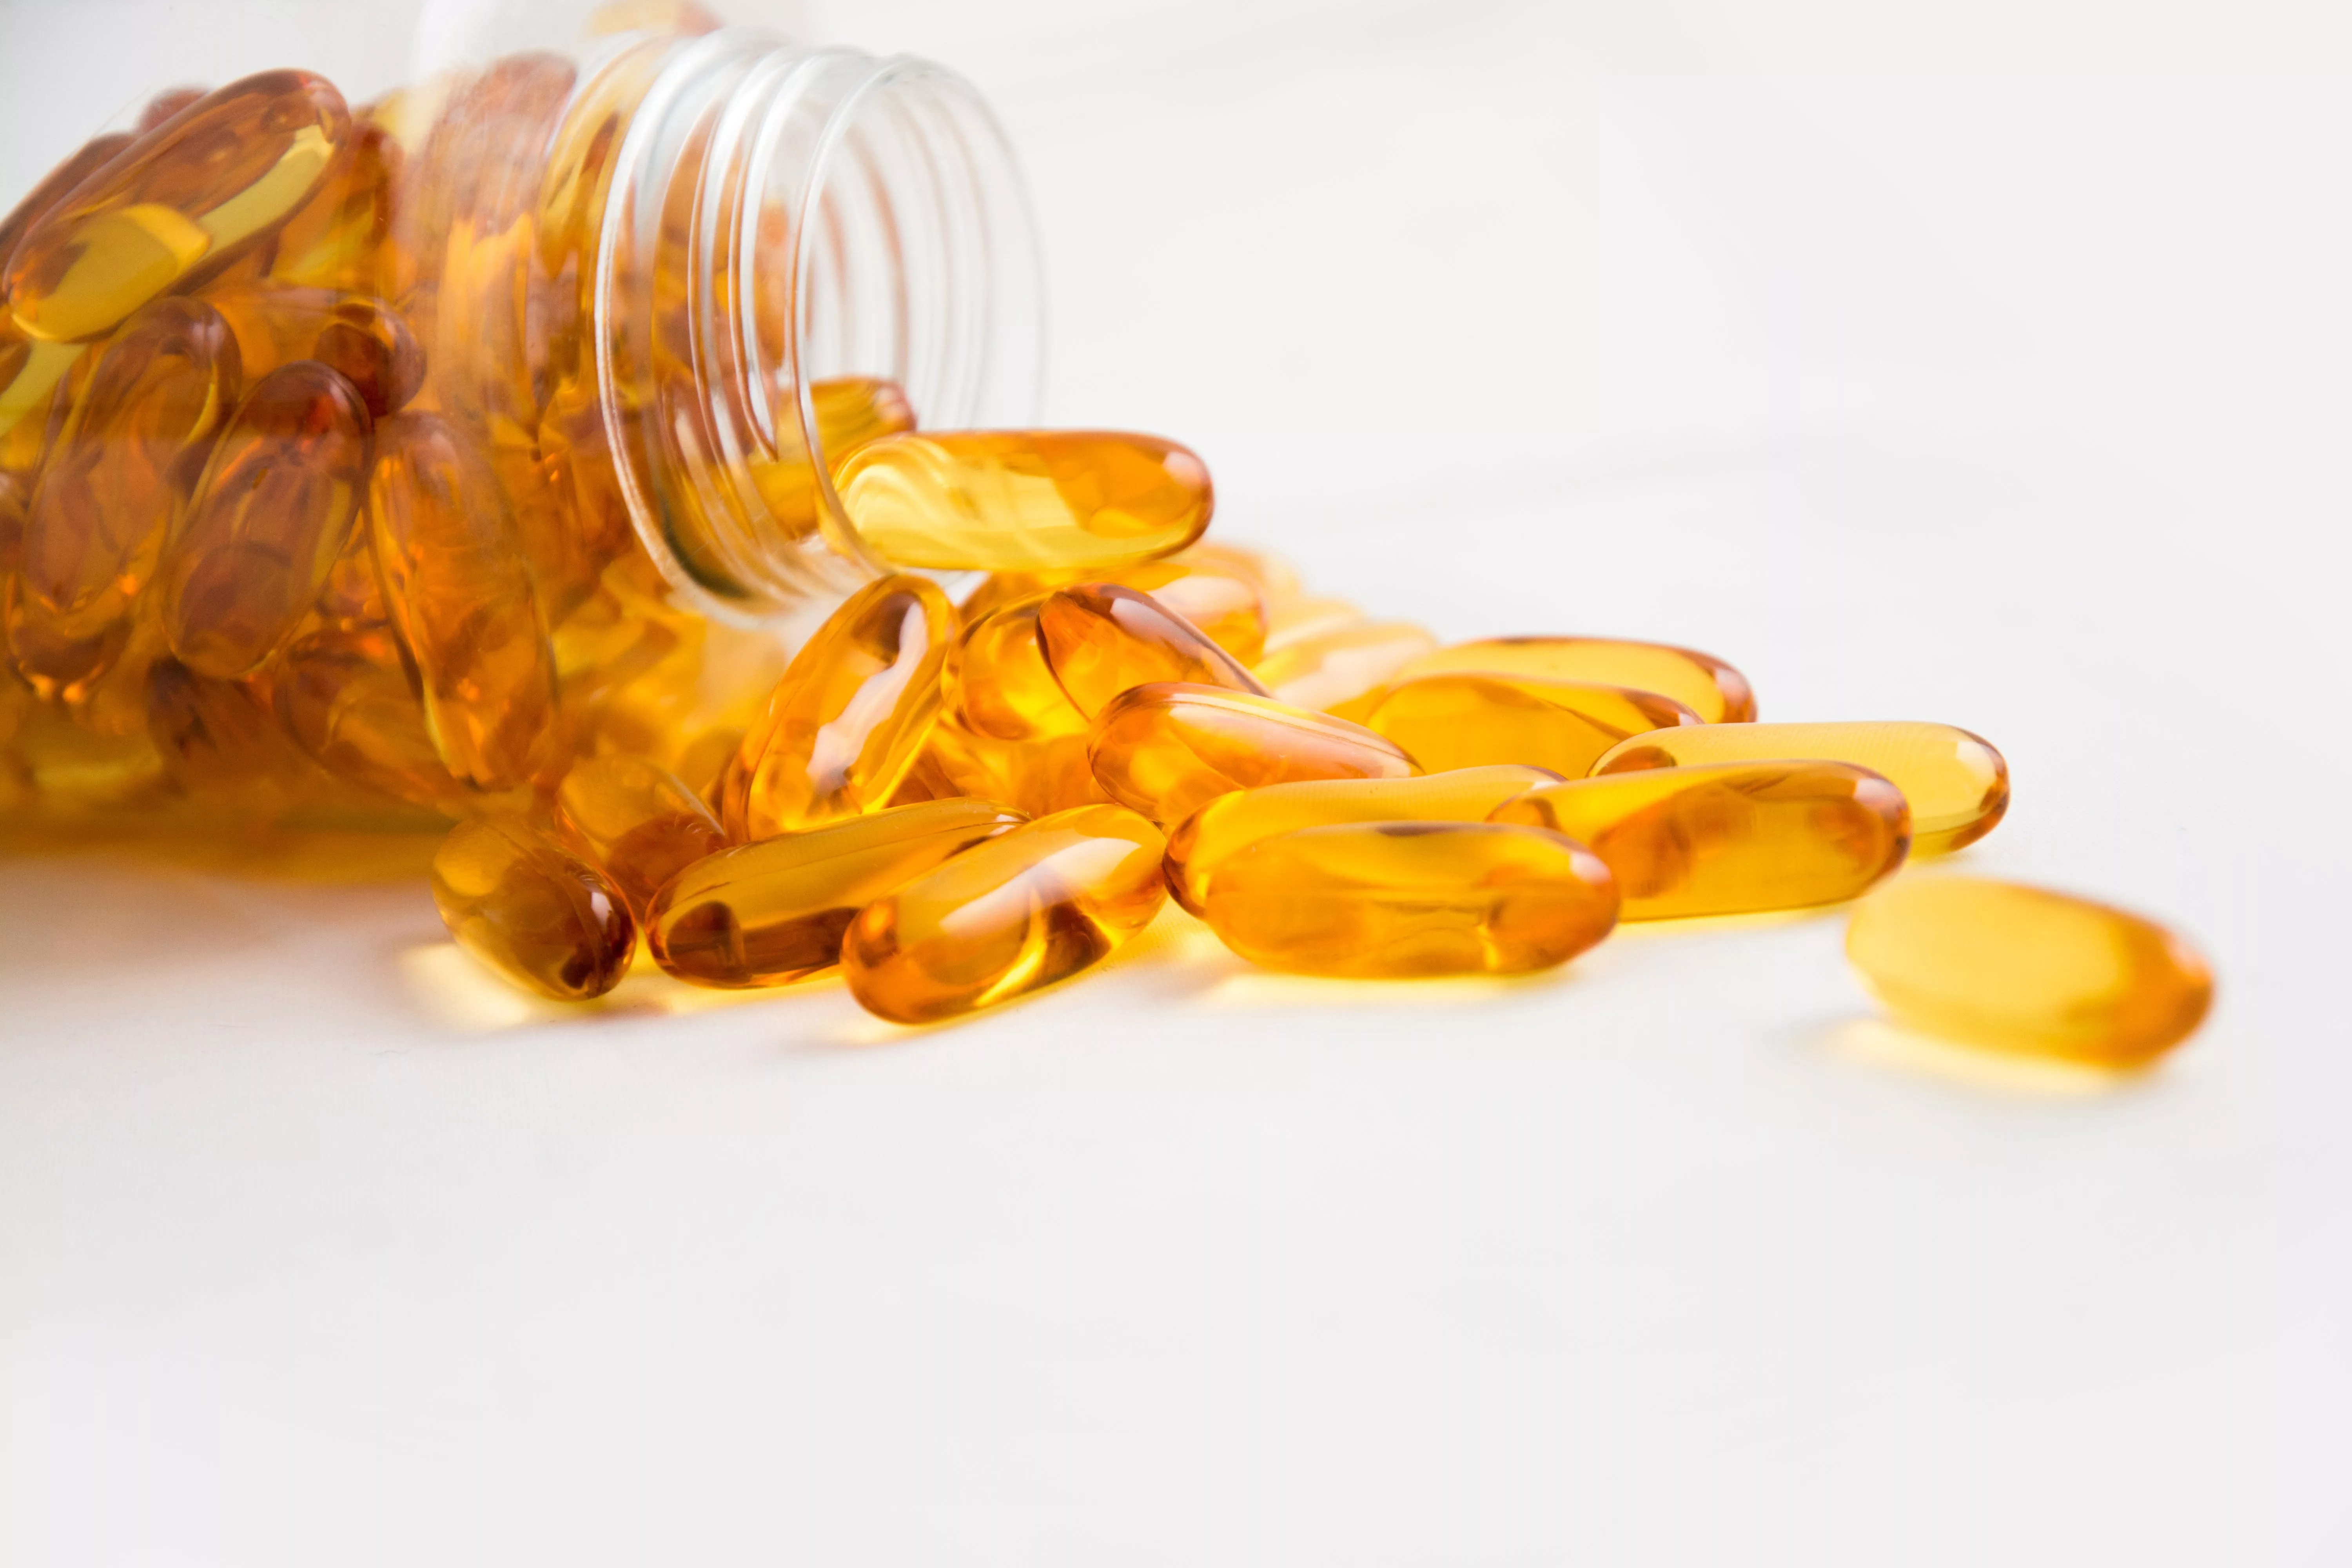 Nährstoffmangel erkennen, Bild von orangen Supplement Tabletten